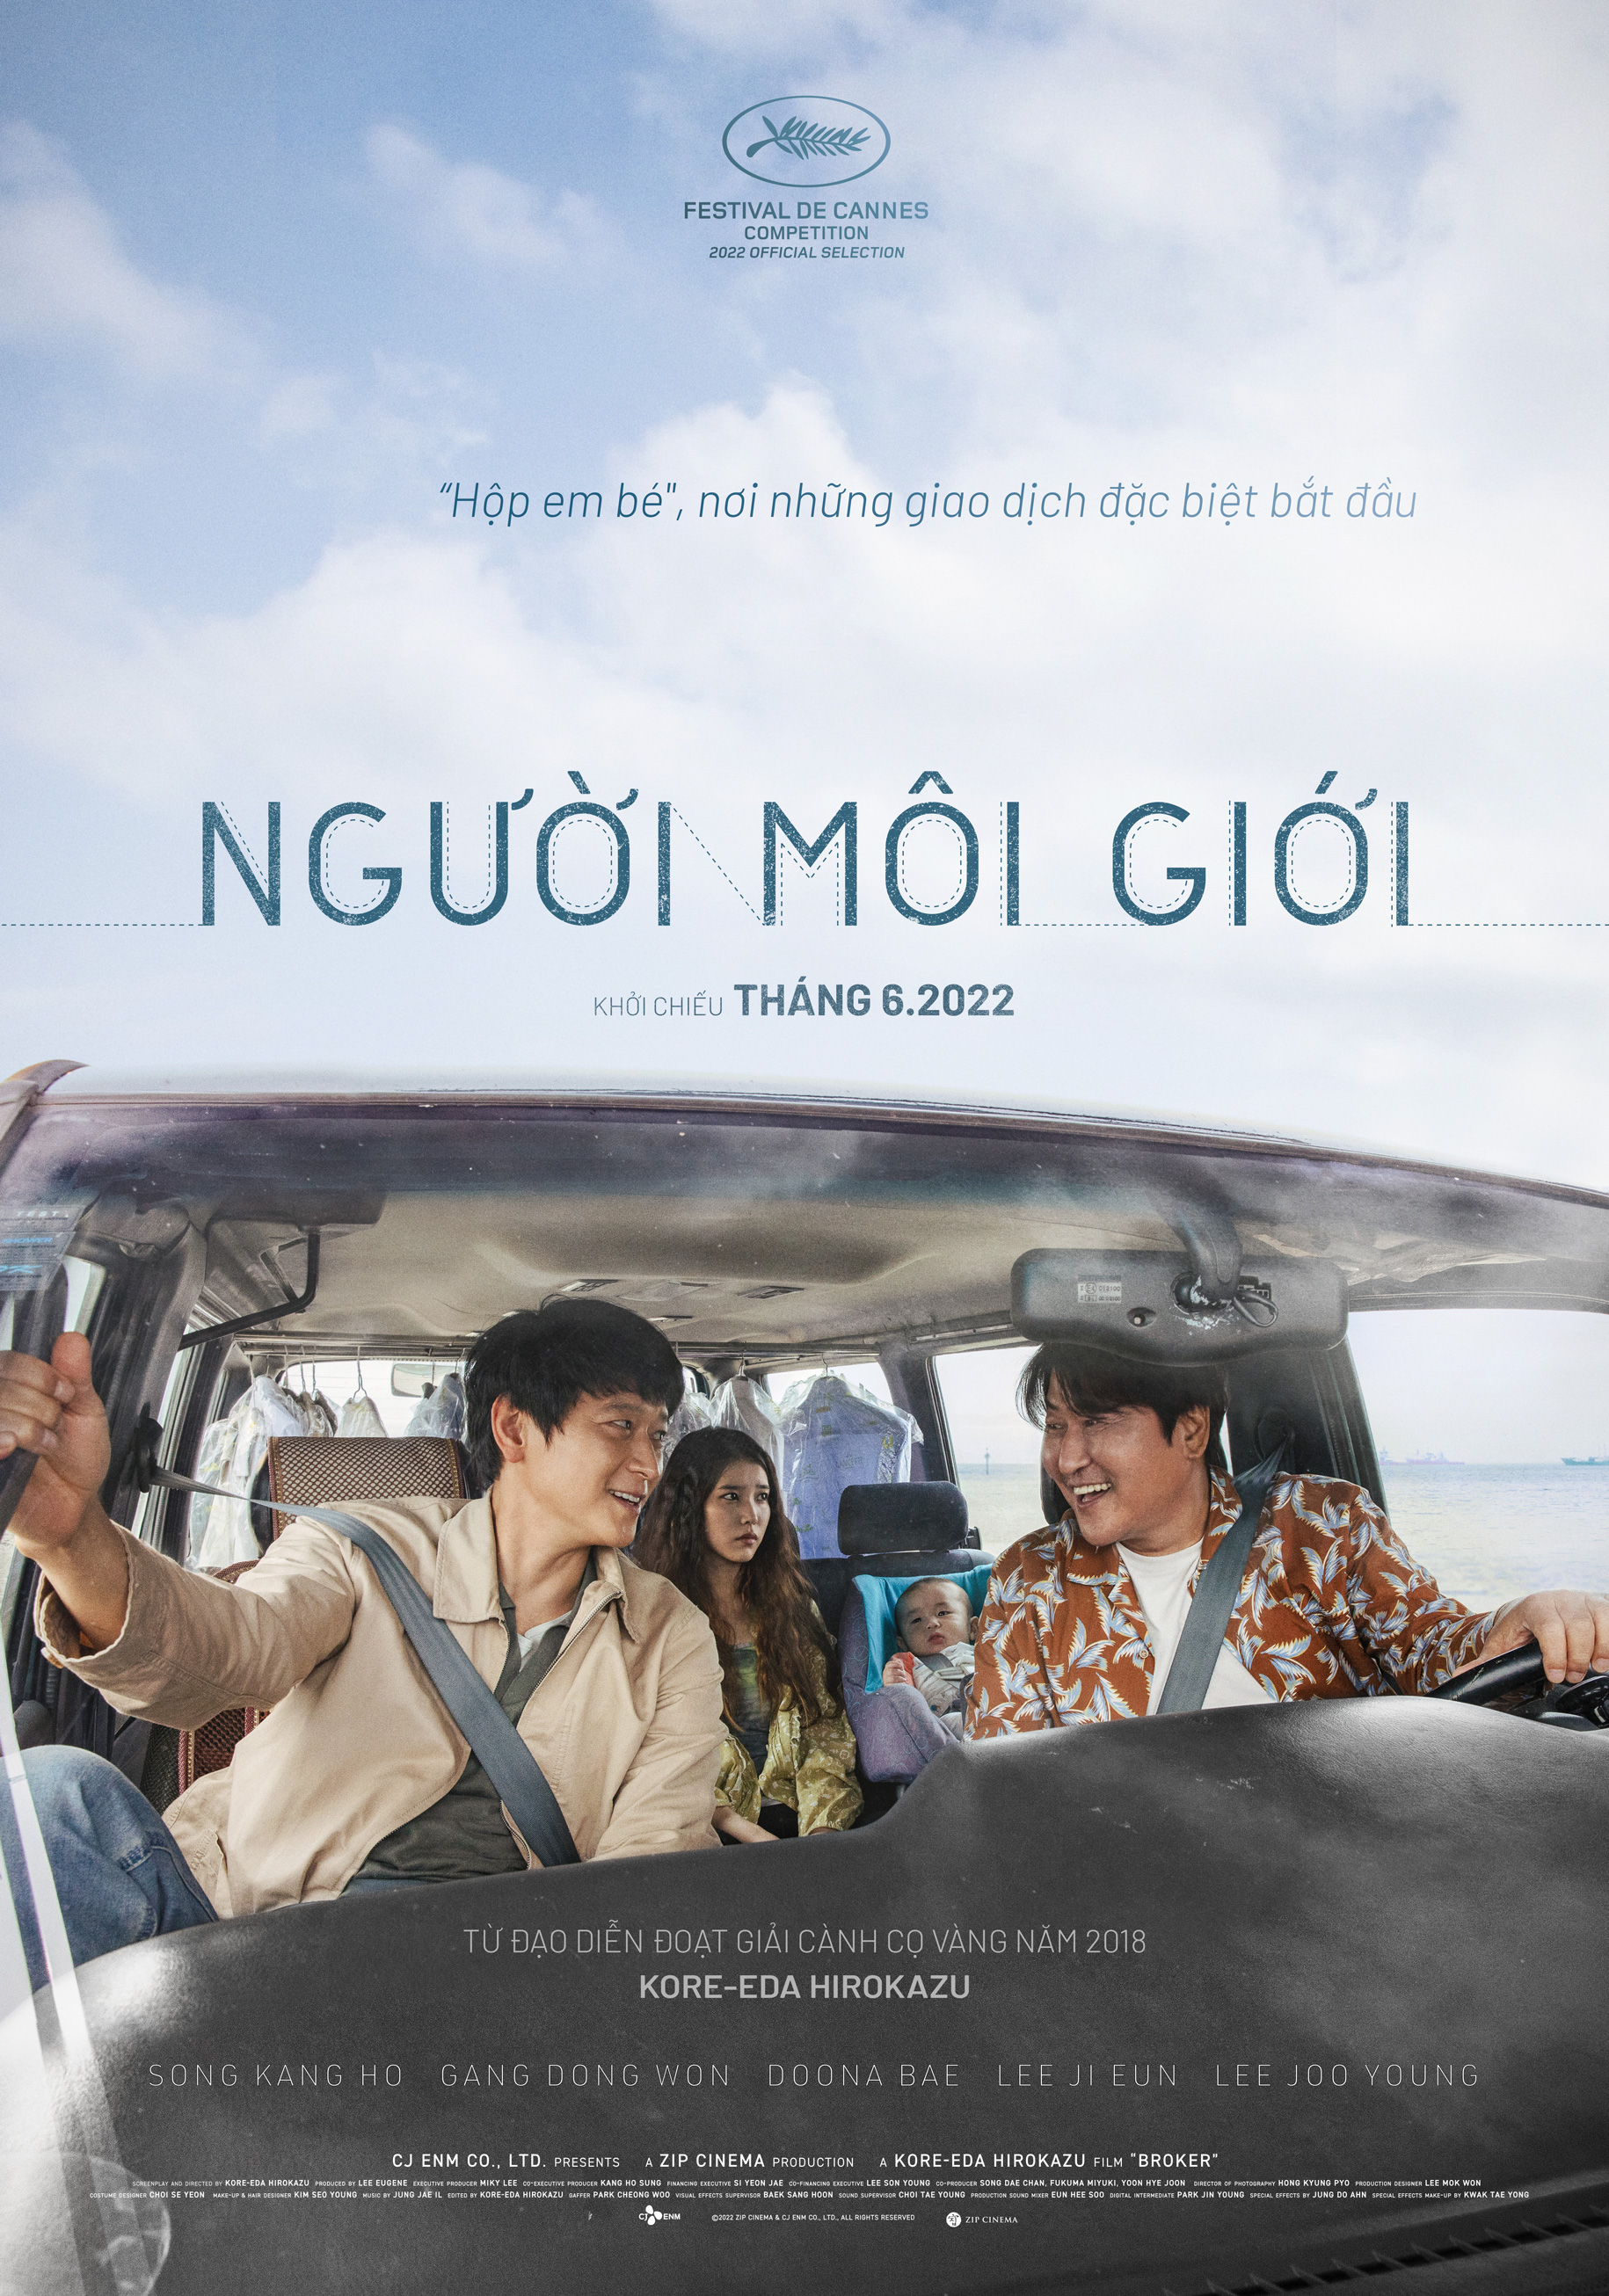 Phim điện ảnh Người môi giới với dàn sao cực phẩm xứ Hàn xác nhận chiếu tại Việt Nam vào tháng 06 này